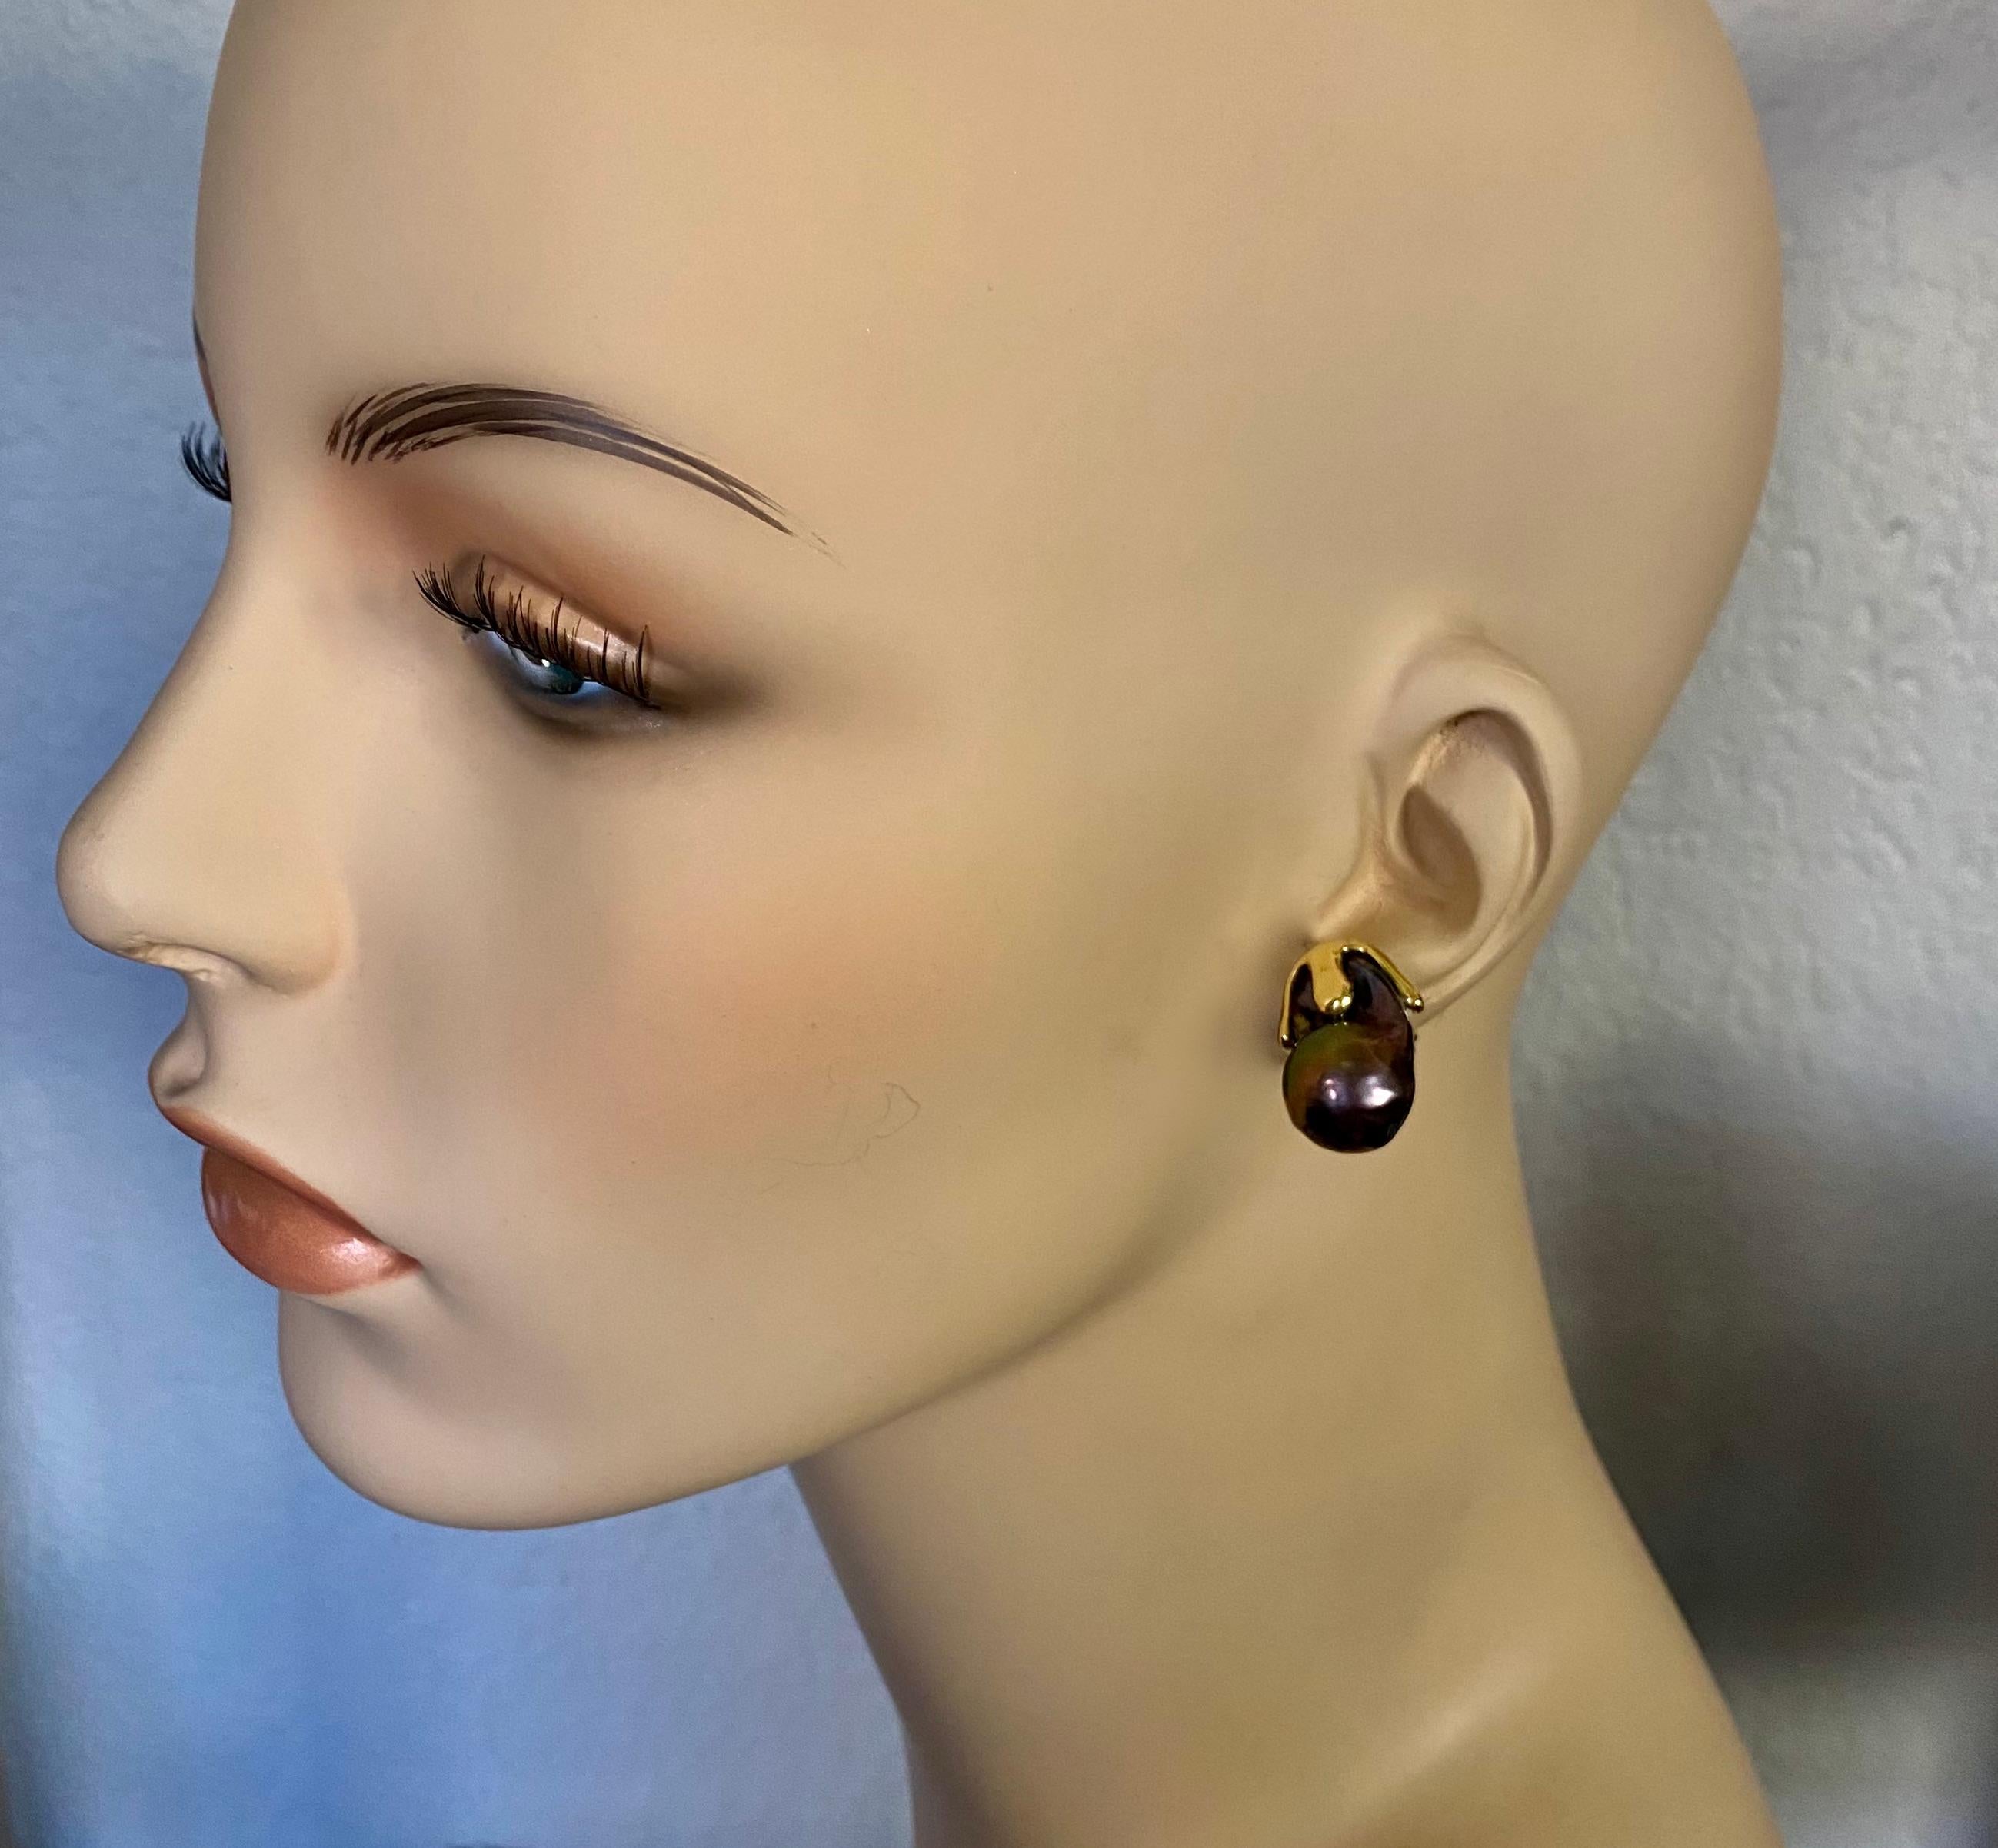 Barocke Süßwasserperlen zieren diese auffälligen Aqueous-Ohrringe.  Die gut aufeinander abgestimmten auberginefarbenen Perlen besitzen einen brillanten Glanz und reflektieren eine Reihe anderer Pfauenfarben.  Die Perlen sind in handgefertigte